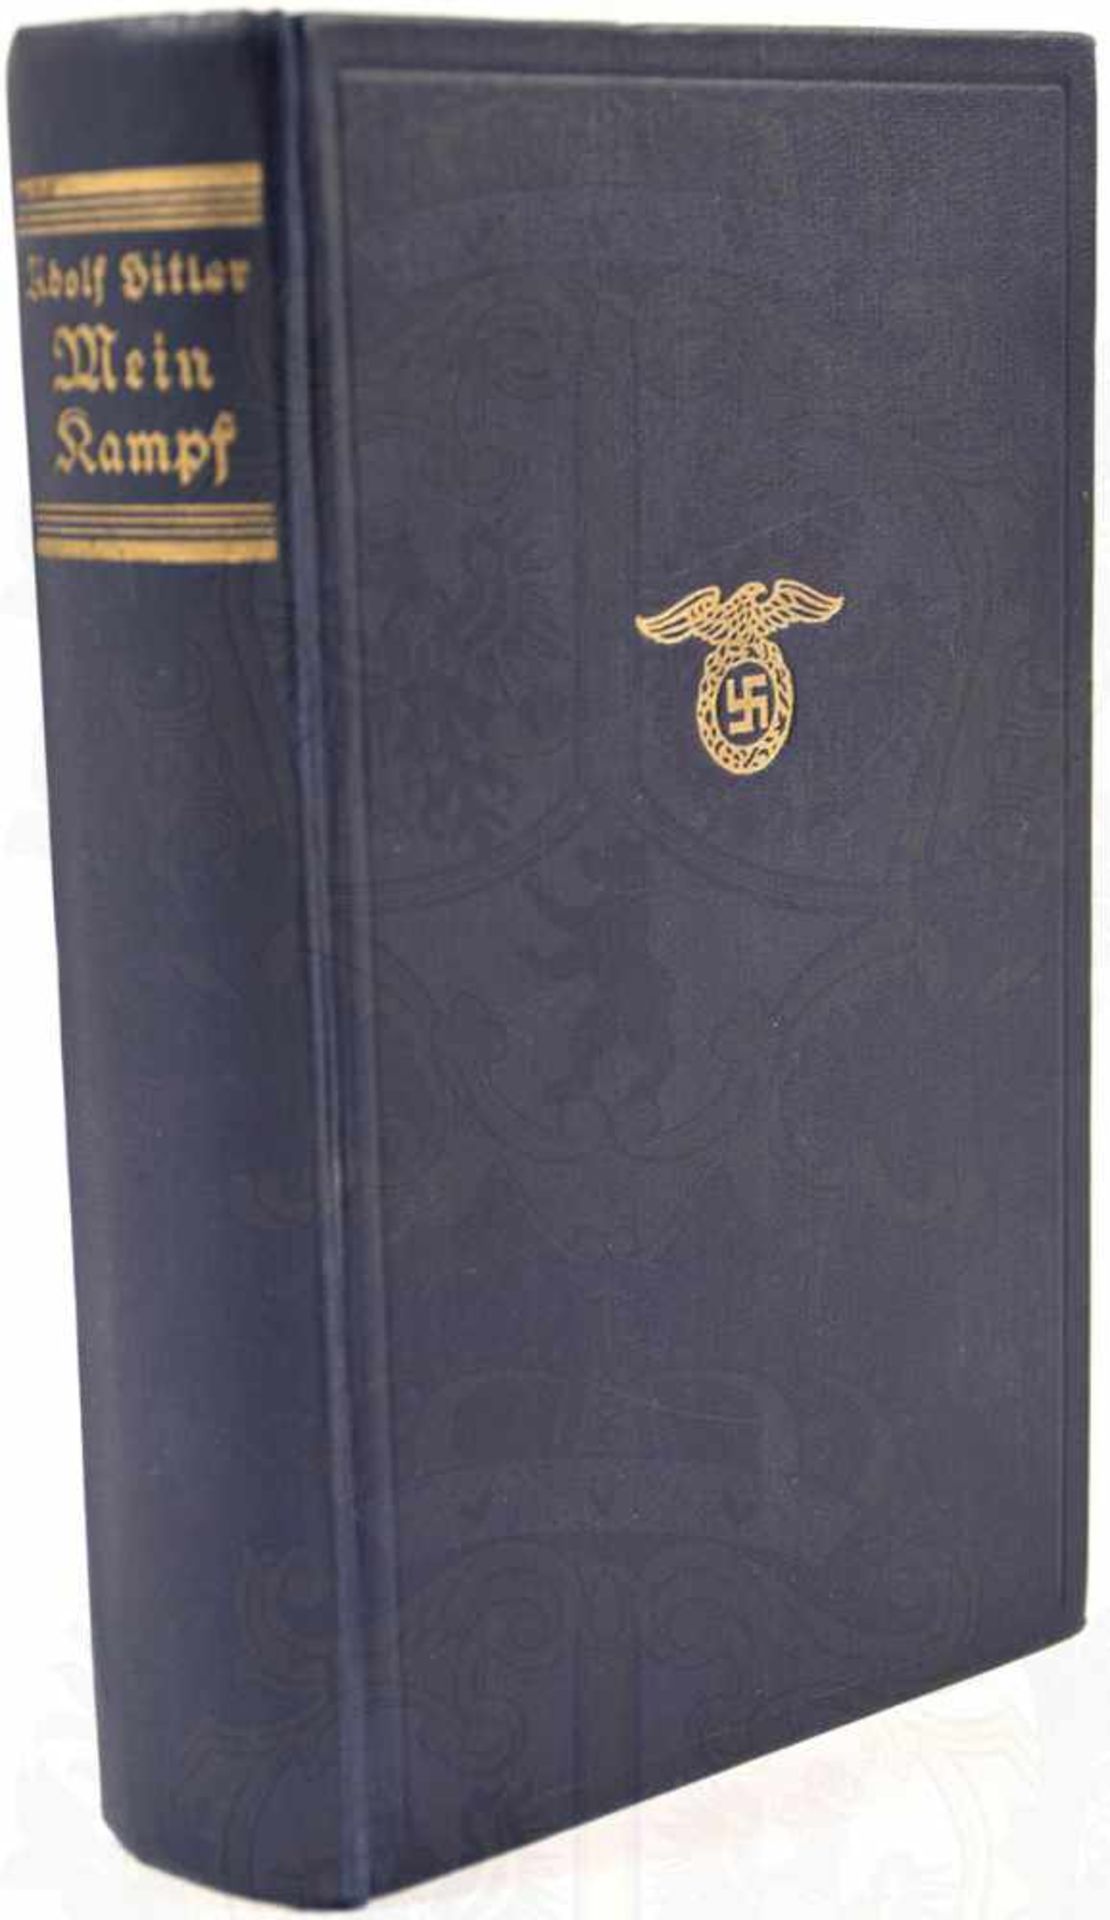 MEIN KAMPF, von Adolf Hitler, Volksausgabe, Zentralverlag der NSDAP, München 1939, 781 S., 1